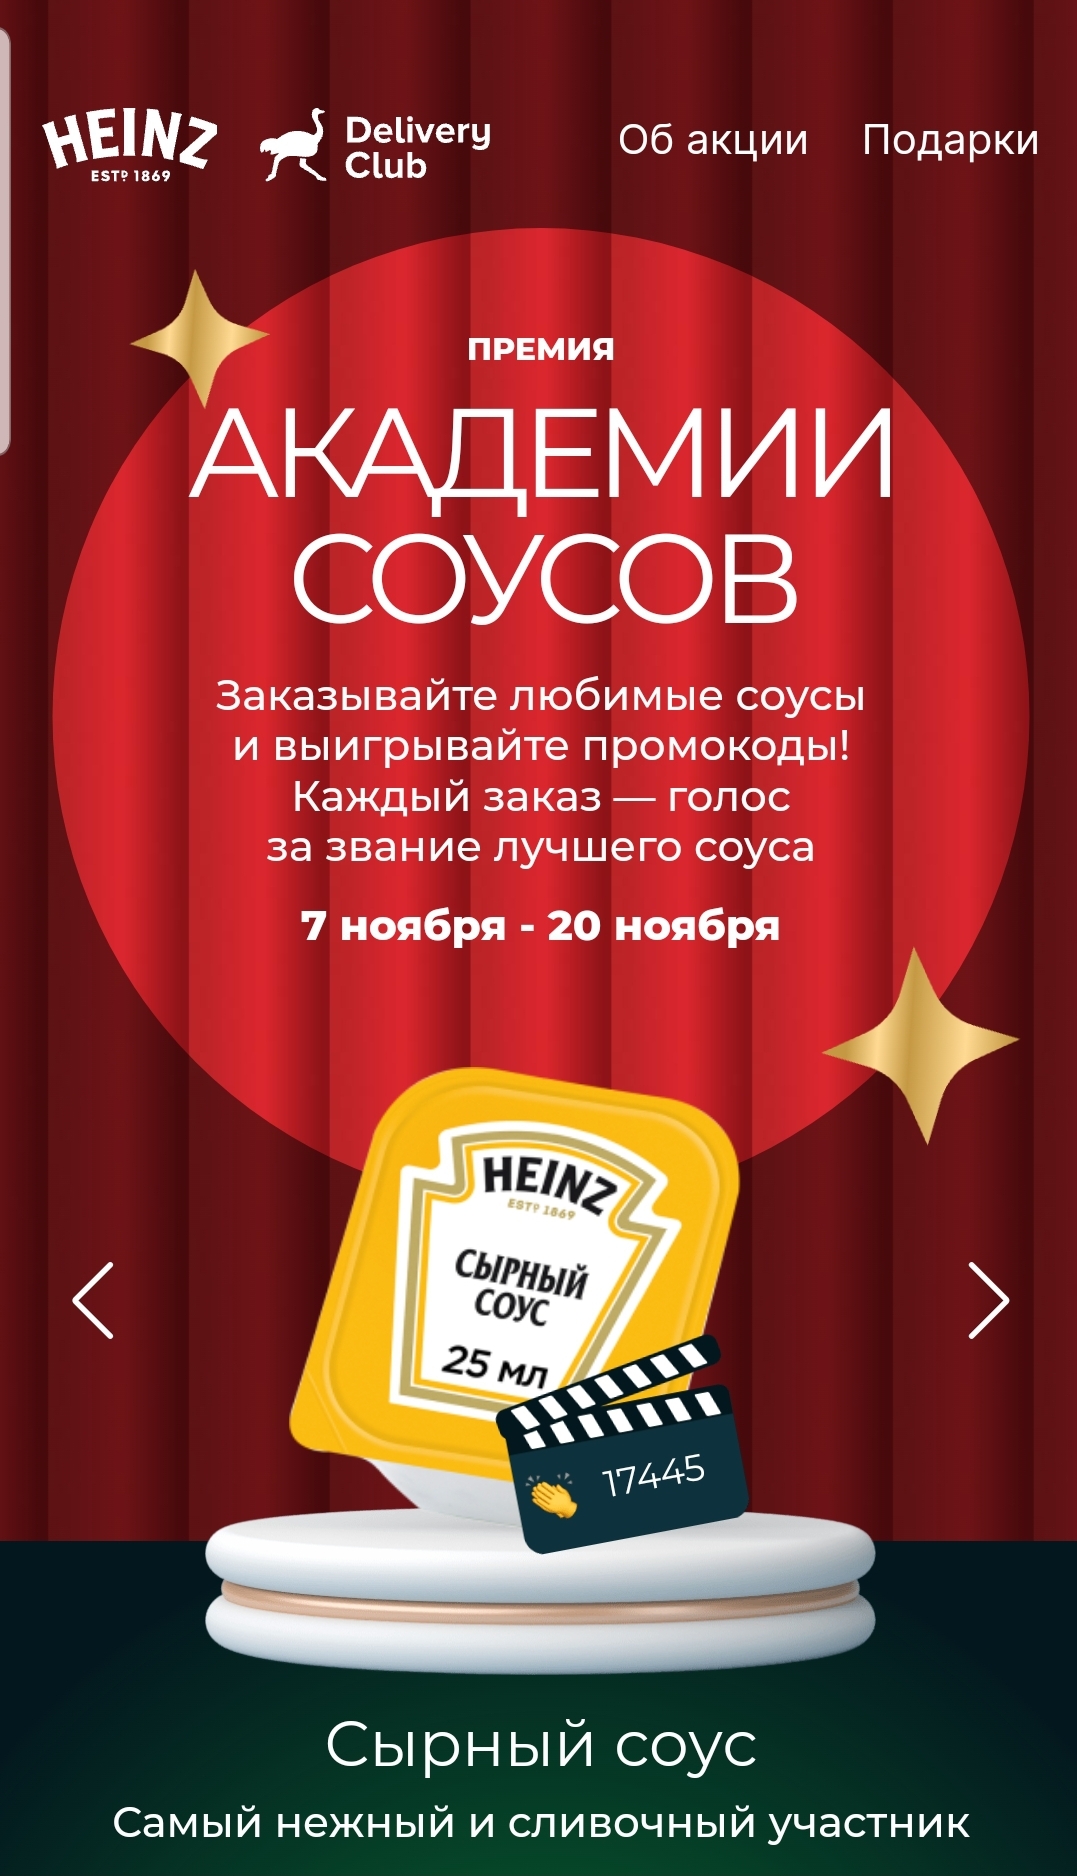 «Академия Соусов» - Heinz (Хайнц) и Delivery club